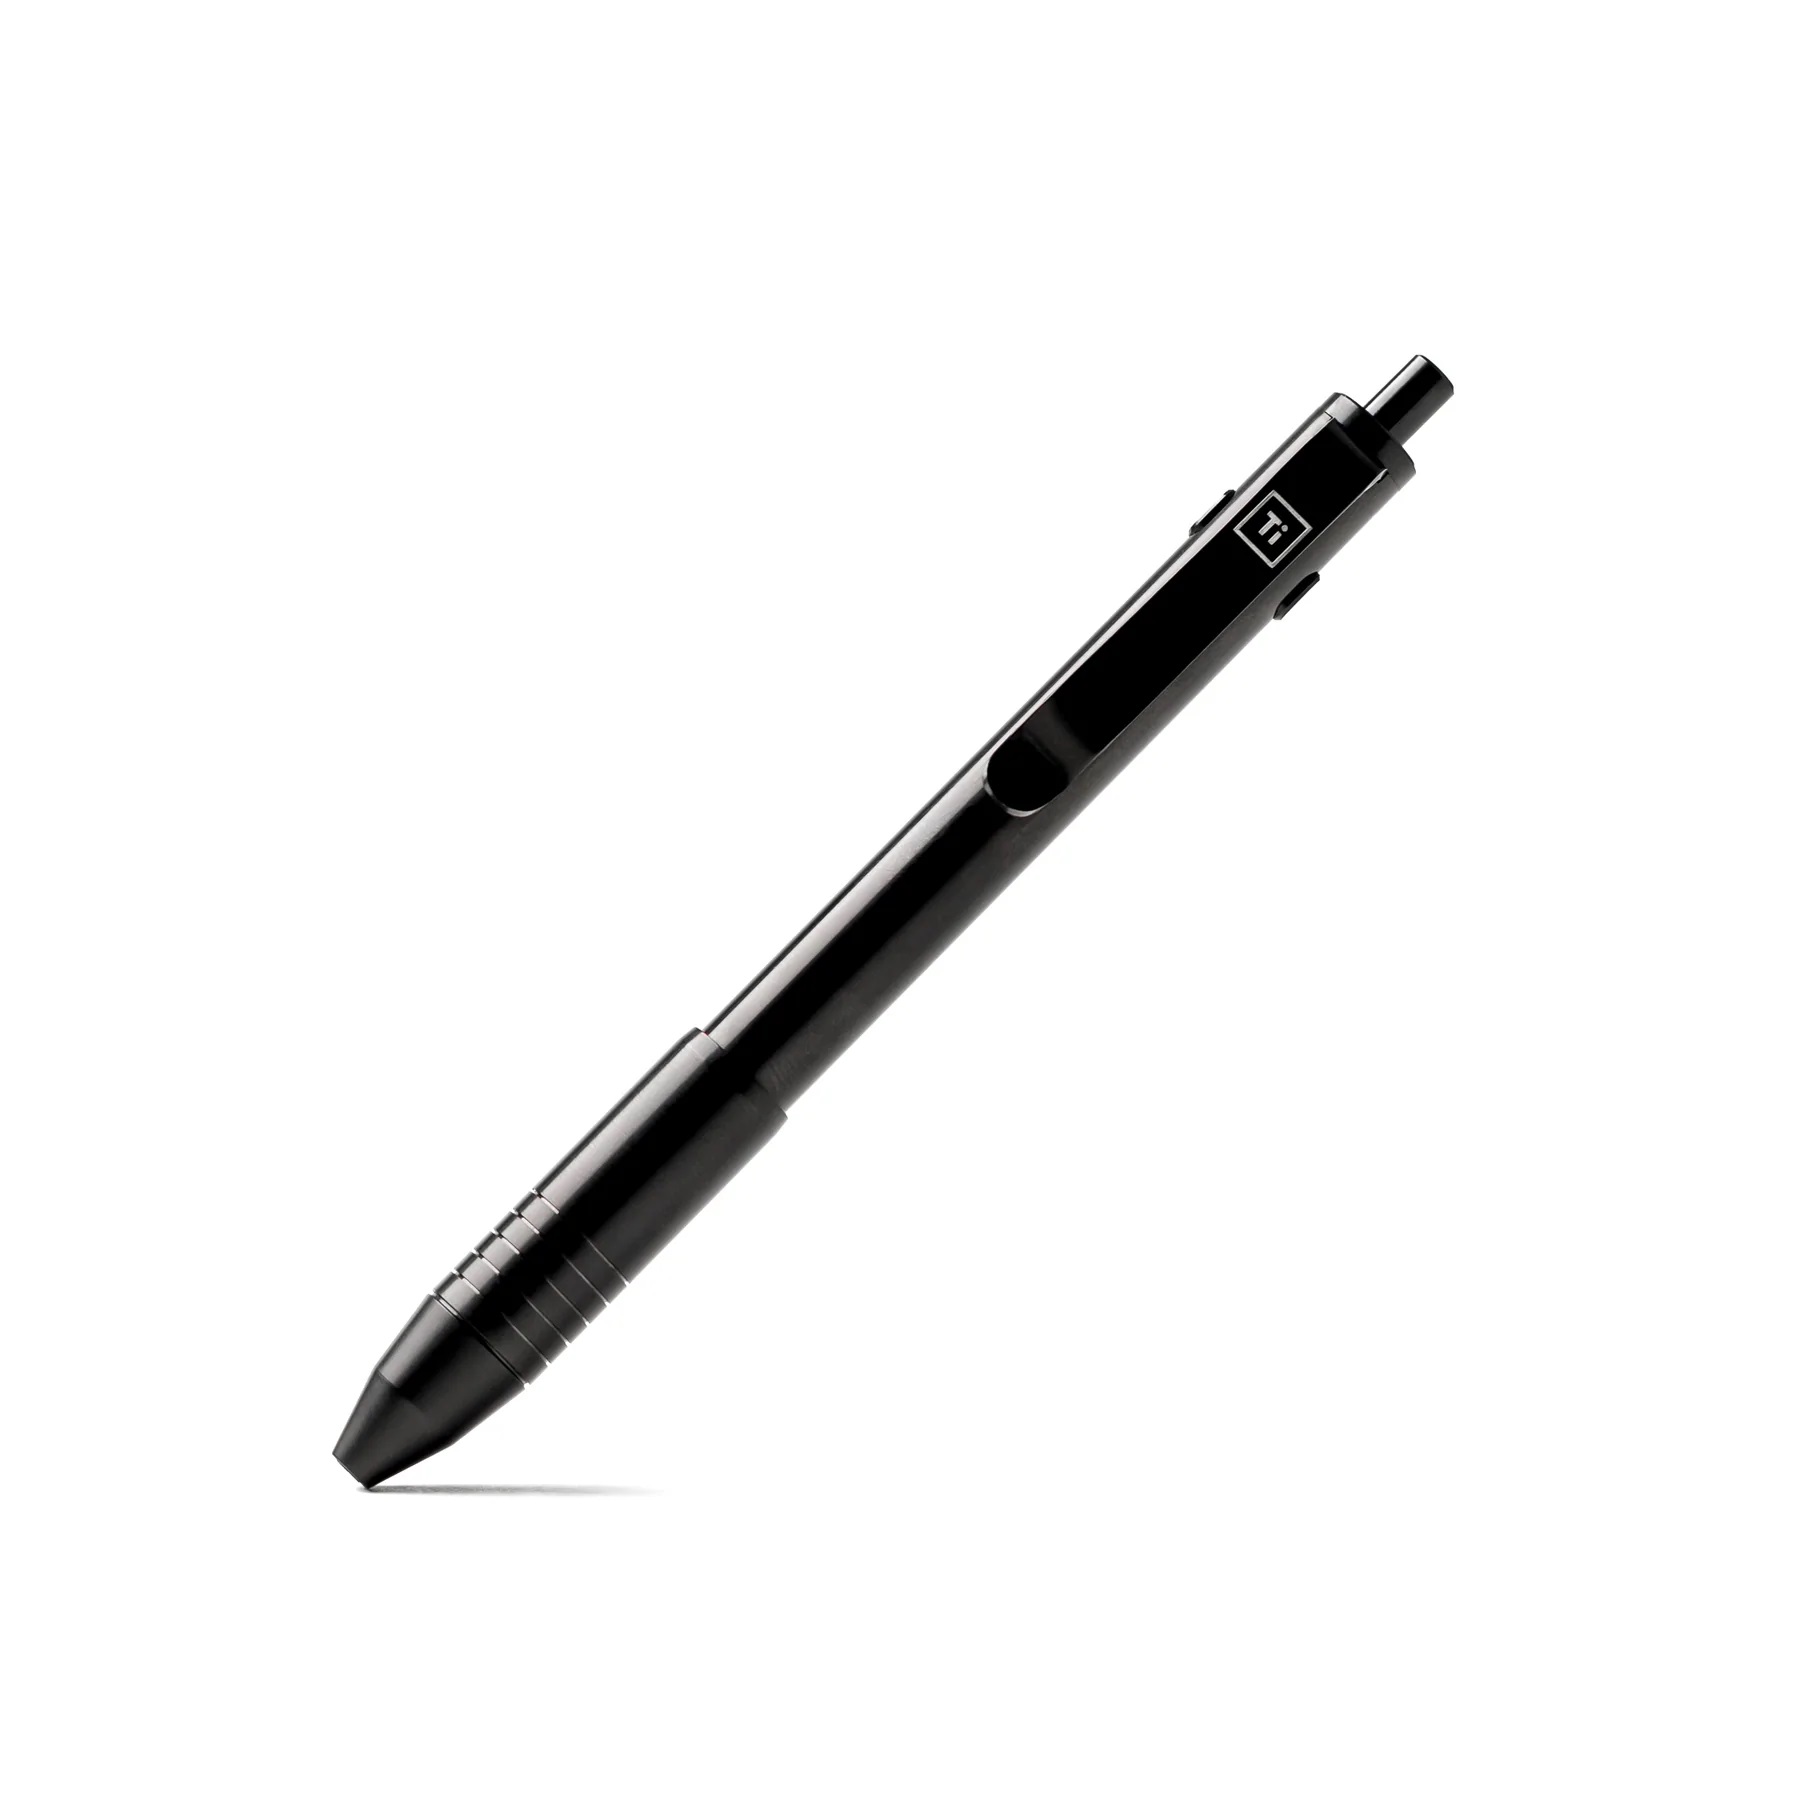 Big Idea Design Dual Side Click Pen